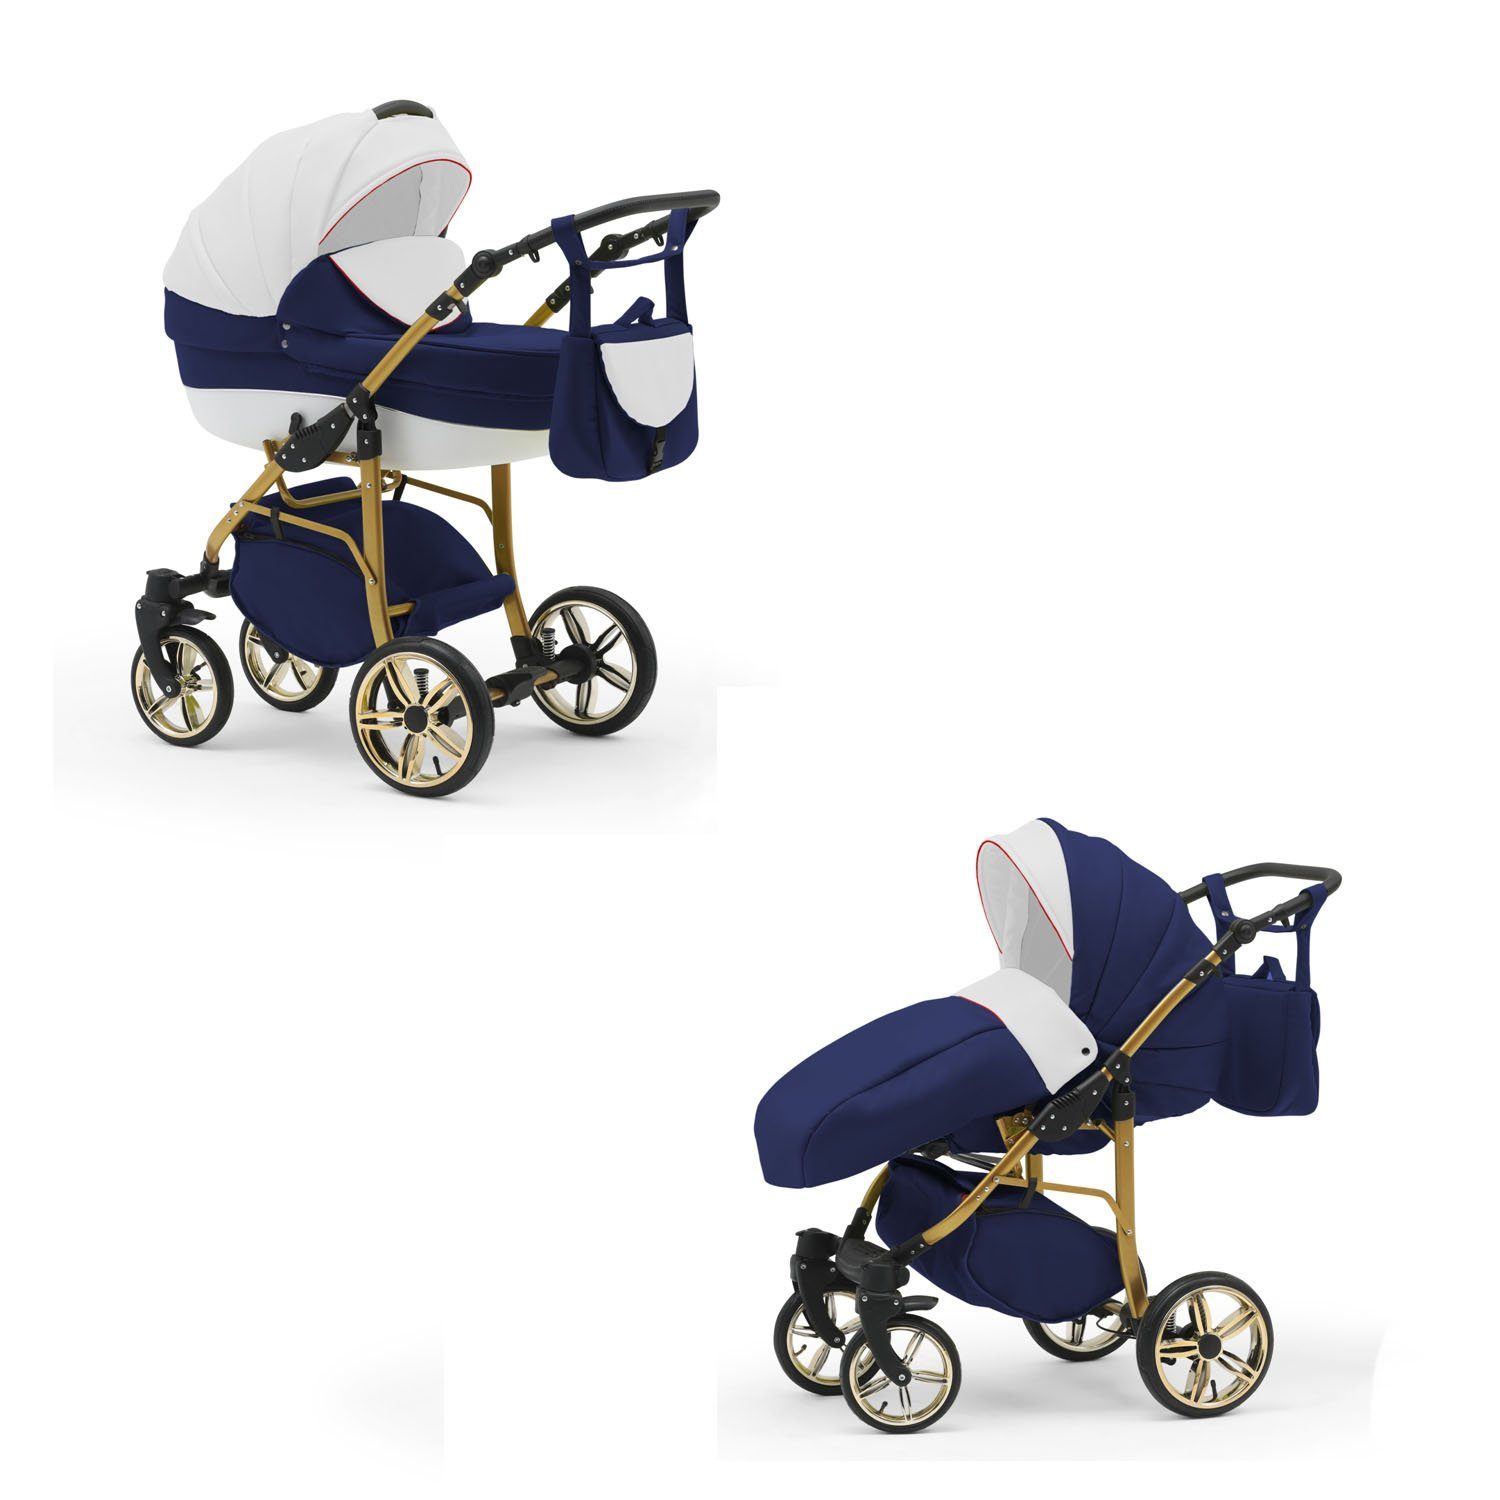 Teile 46 Kinderwagen-Set in Farben Weiß-Navy-Weiß babies-on-wheels 2 Kombi-Kinderwagen - 13 1 Gold in Cosmo -